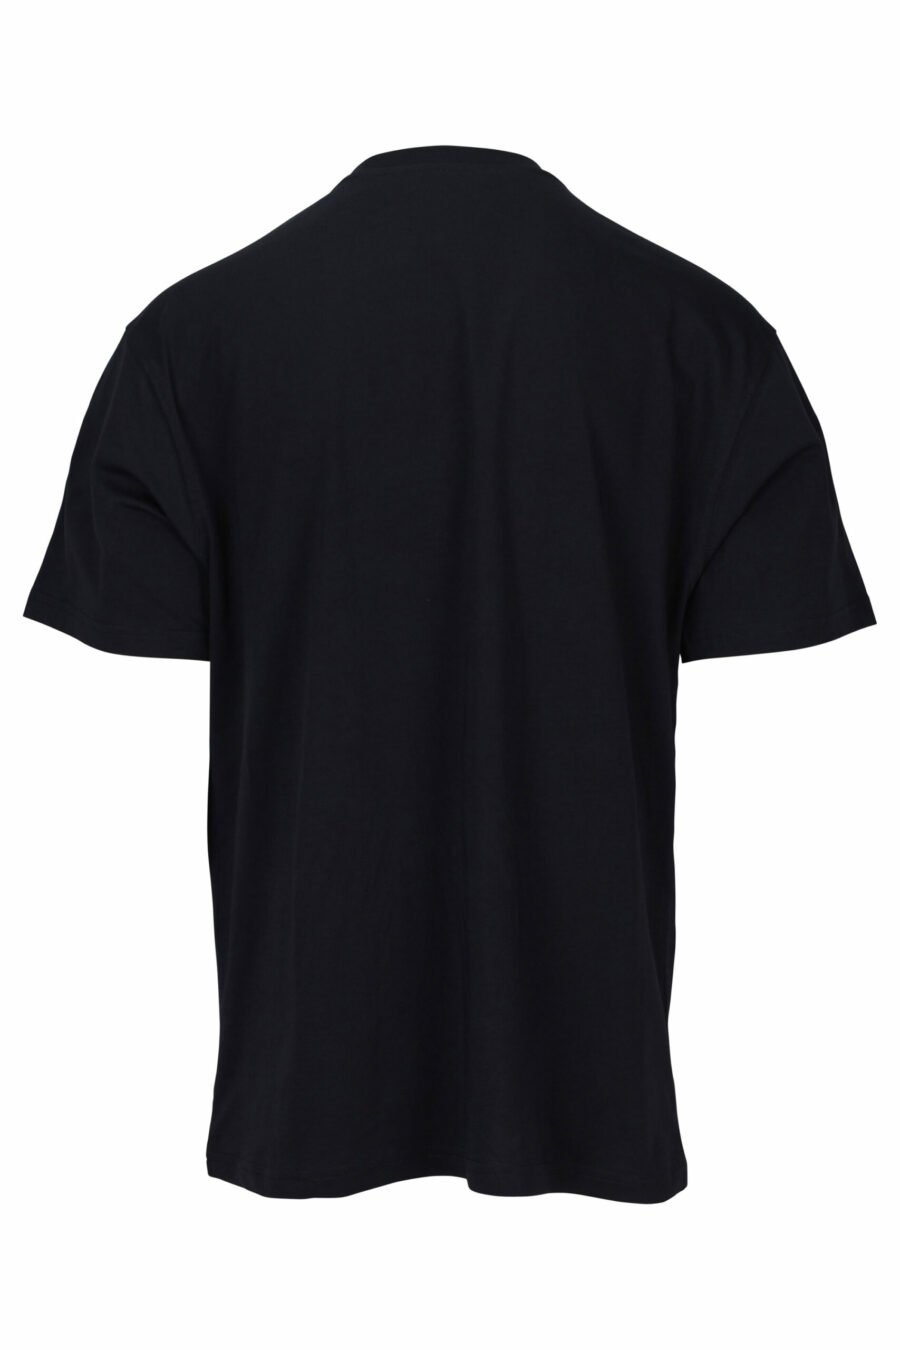 Schwarzes T-Shirt mit gesticktem Maxilogo mit orangefarbenen Details - 889316957471 1 skaliert